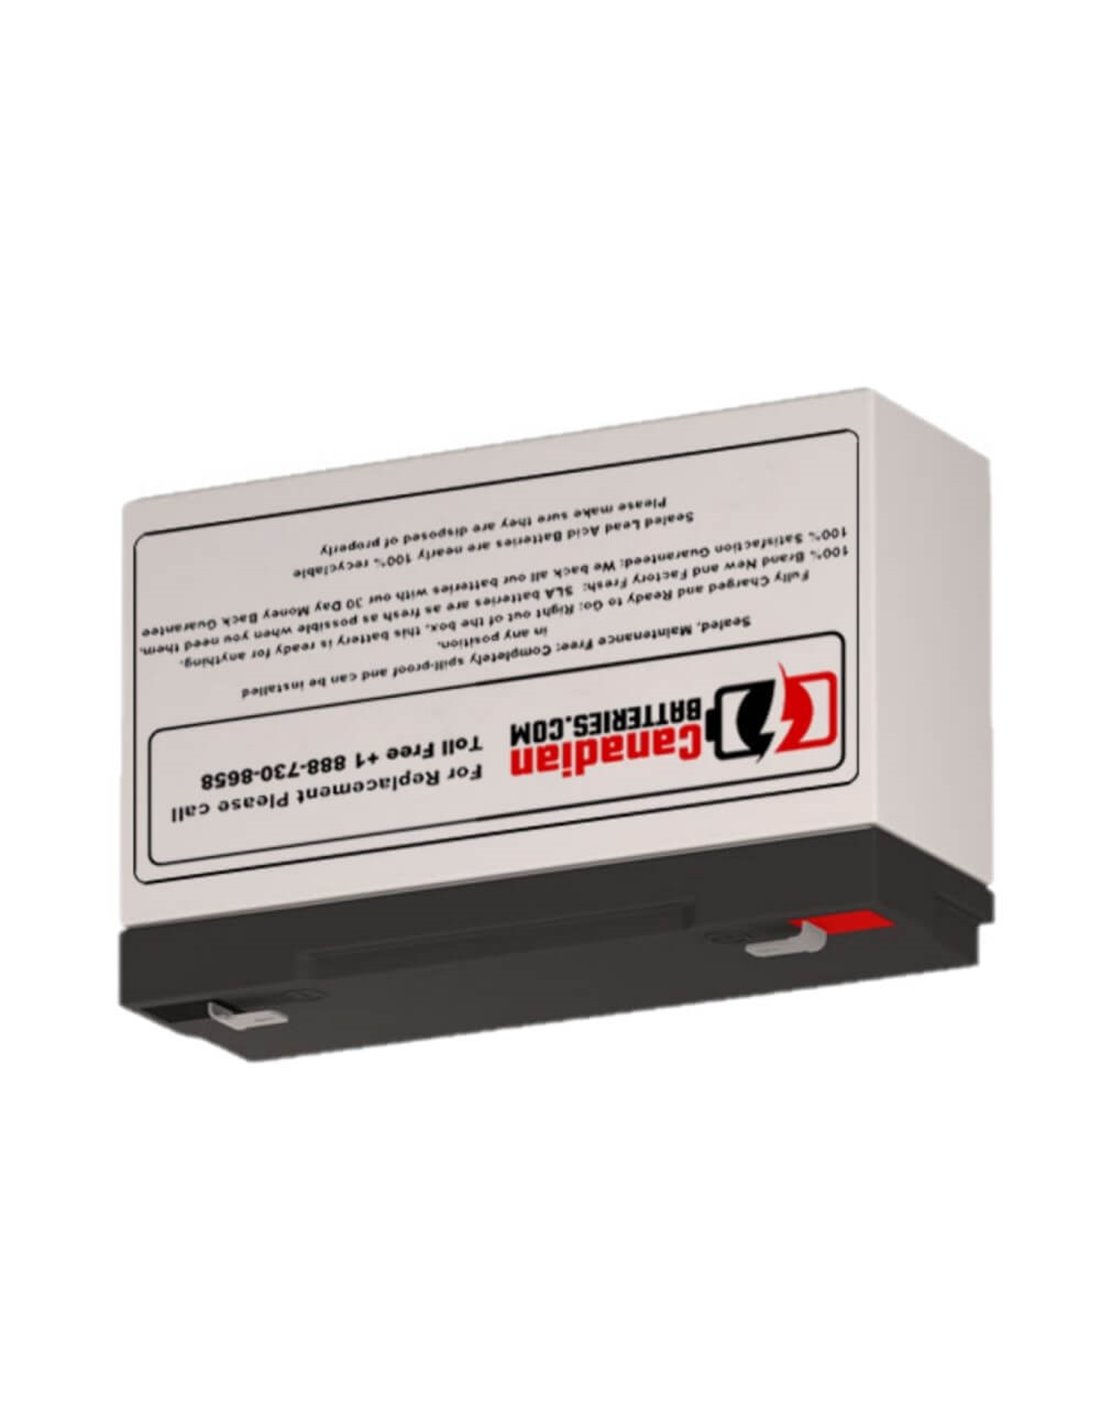 Battery for Safe Sts200-117 UPS, 1 x 6V, 12Ah - 72Wh